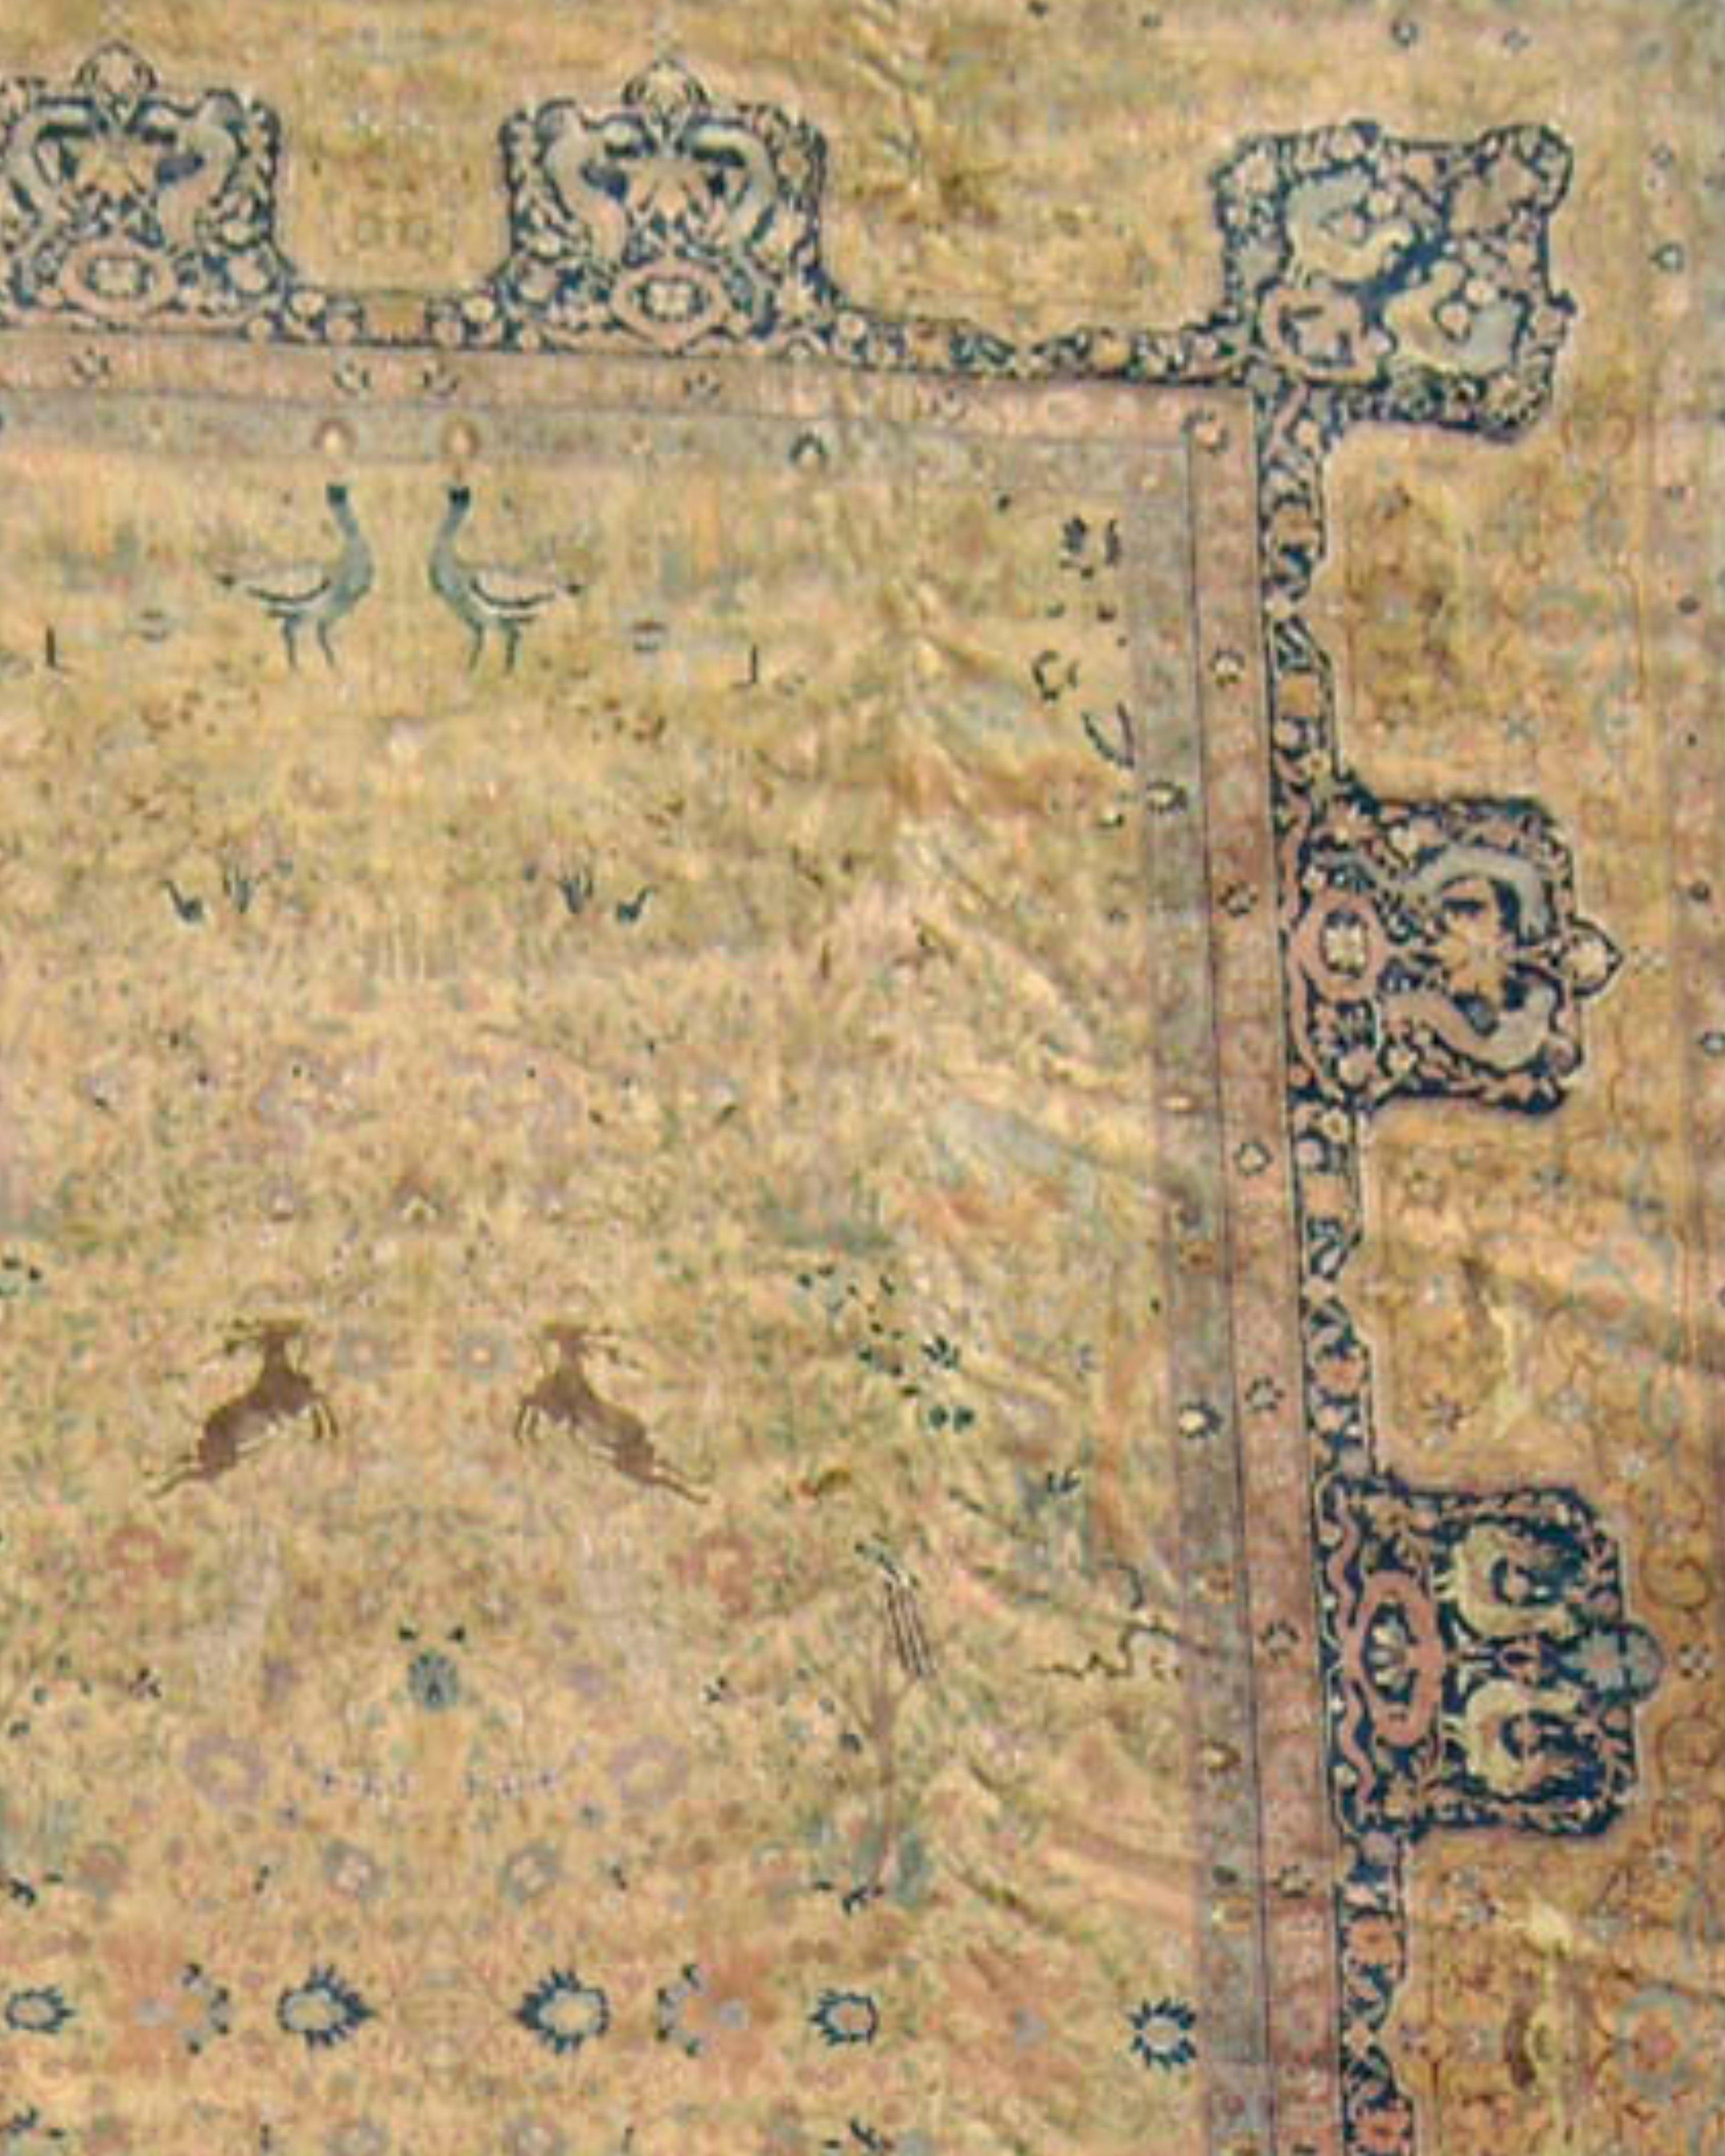 Antiker, großer, Anatolischer Sivas-Teppich, frühes 20. Jahrhundert

Die Wertschätzung für klassische Orientteppiche im Westen wurde um die Jahrhundertwende durch den vermehrten Erwerb solcher Stücke durch bedeutende europäische Museen gesteigert.